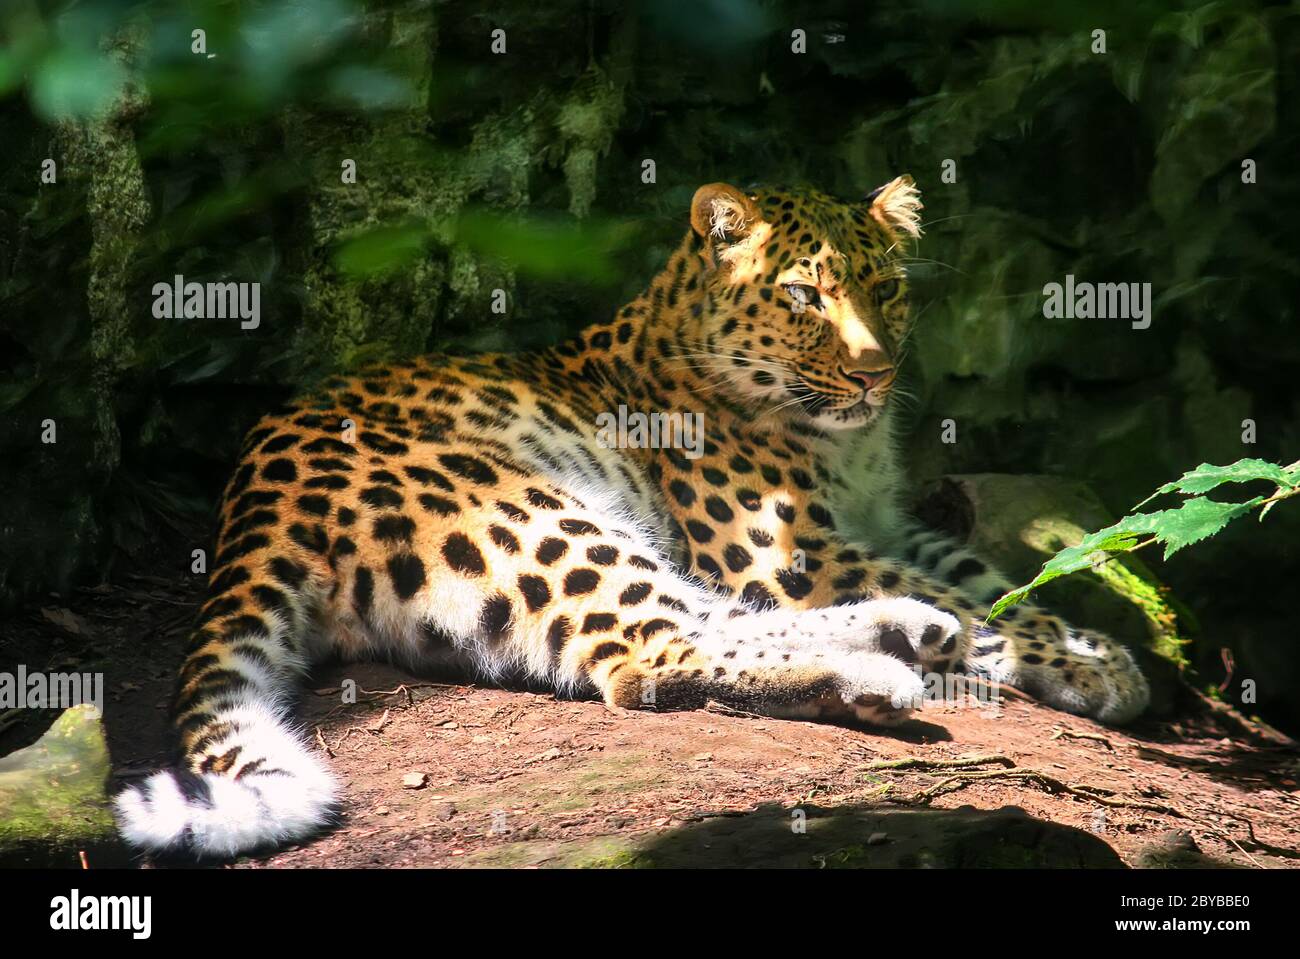 Le léopard d'Amur se trouve sur une pierre dans la forêt. Gros plan d'un animal. Mise au point sélective Banque D'Images